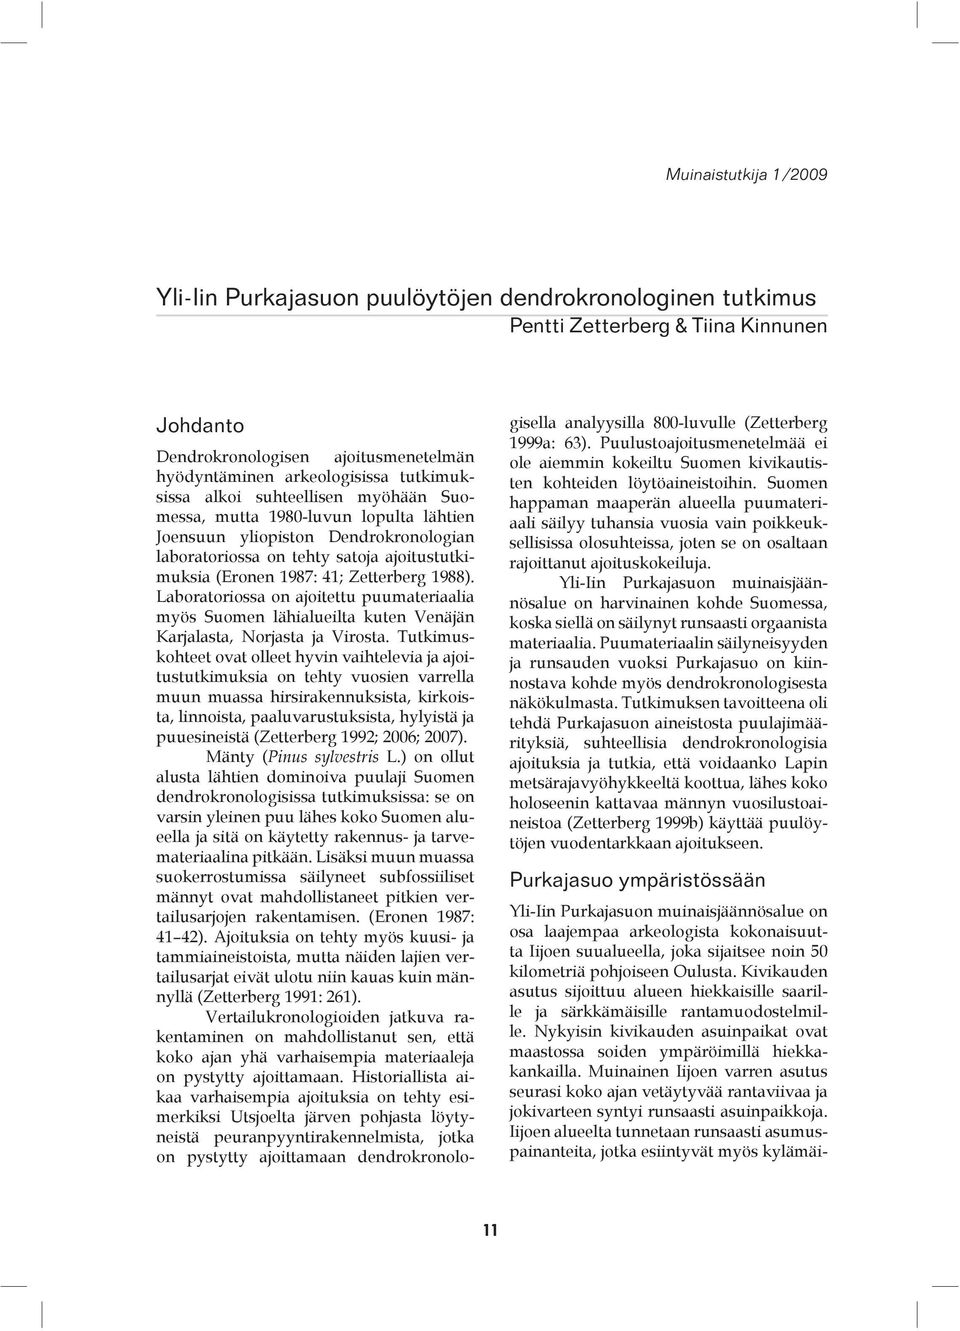 Zetterberg 1988). Laboratoriossa on ajoitettu puumateriaalia myös Suomen lähialueilta kuten Venäjän Karjalasta, Norjasta ja Virosta.